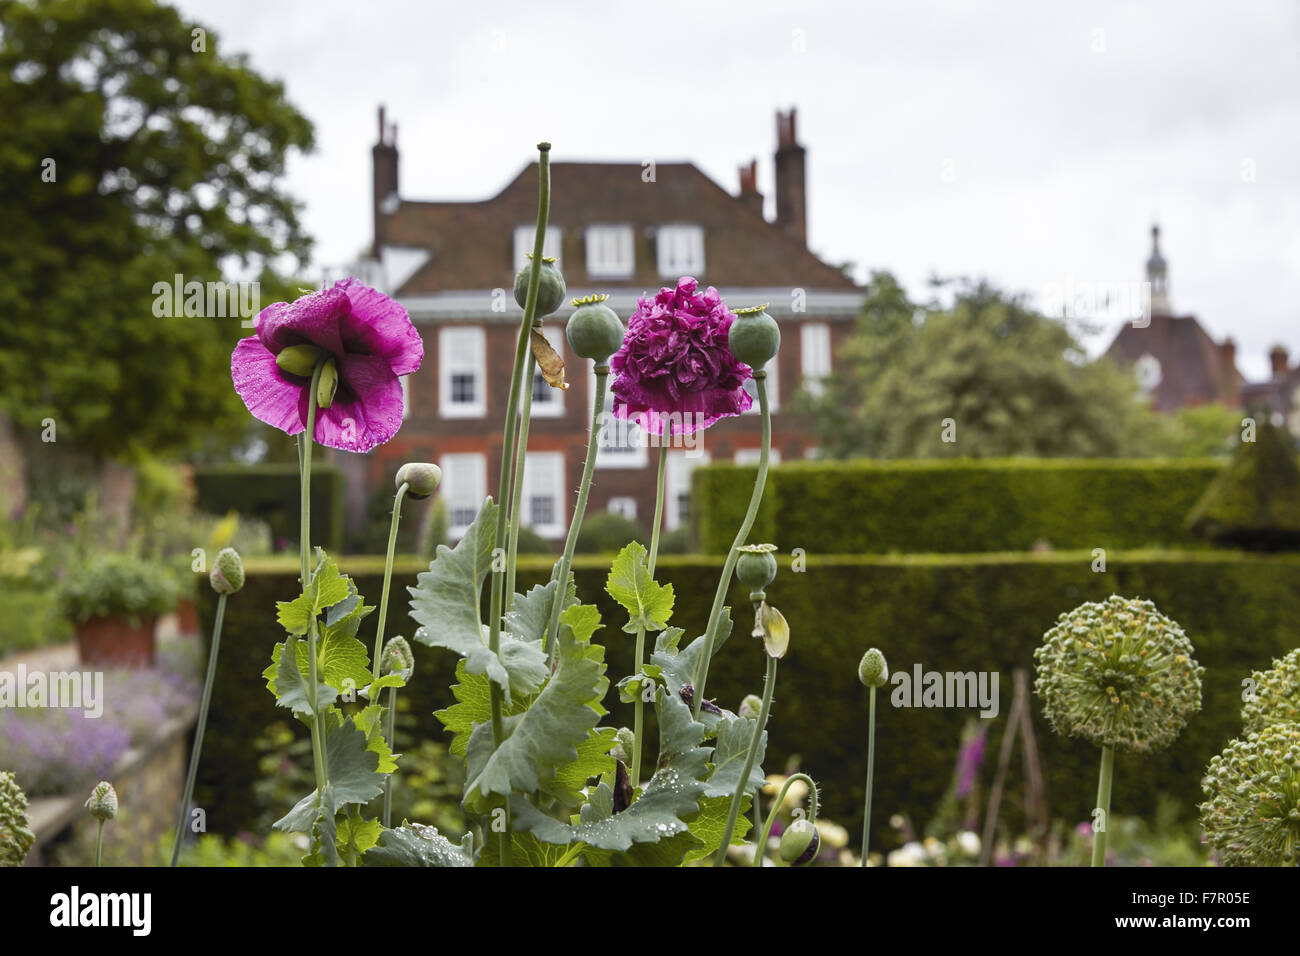 Der Garten am Fenton House and Garden, London. Fenton House wurde im Jahre 1686 erbaut und ist gefüllt mit Weltklasse dekorative und bildender Kunst-Sammlungen. Die Gärten sind ein Obstgarten, Gemüsegarten, Rosengarten und formale Terrassen und Rasenflächen. Stockfoto